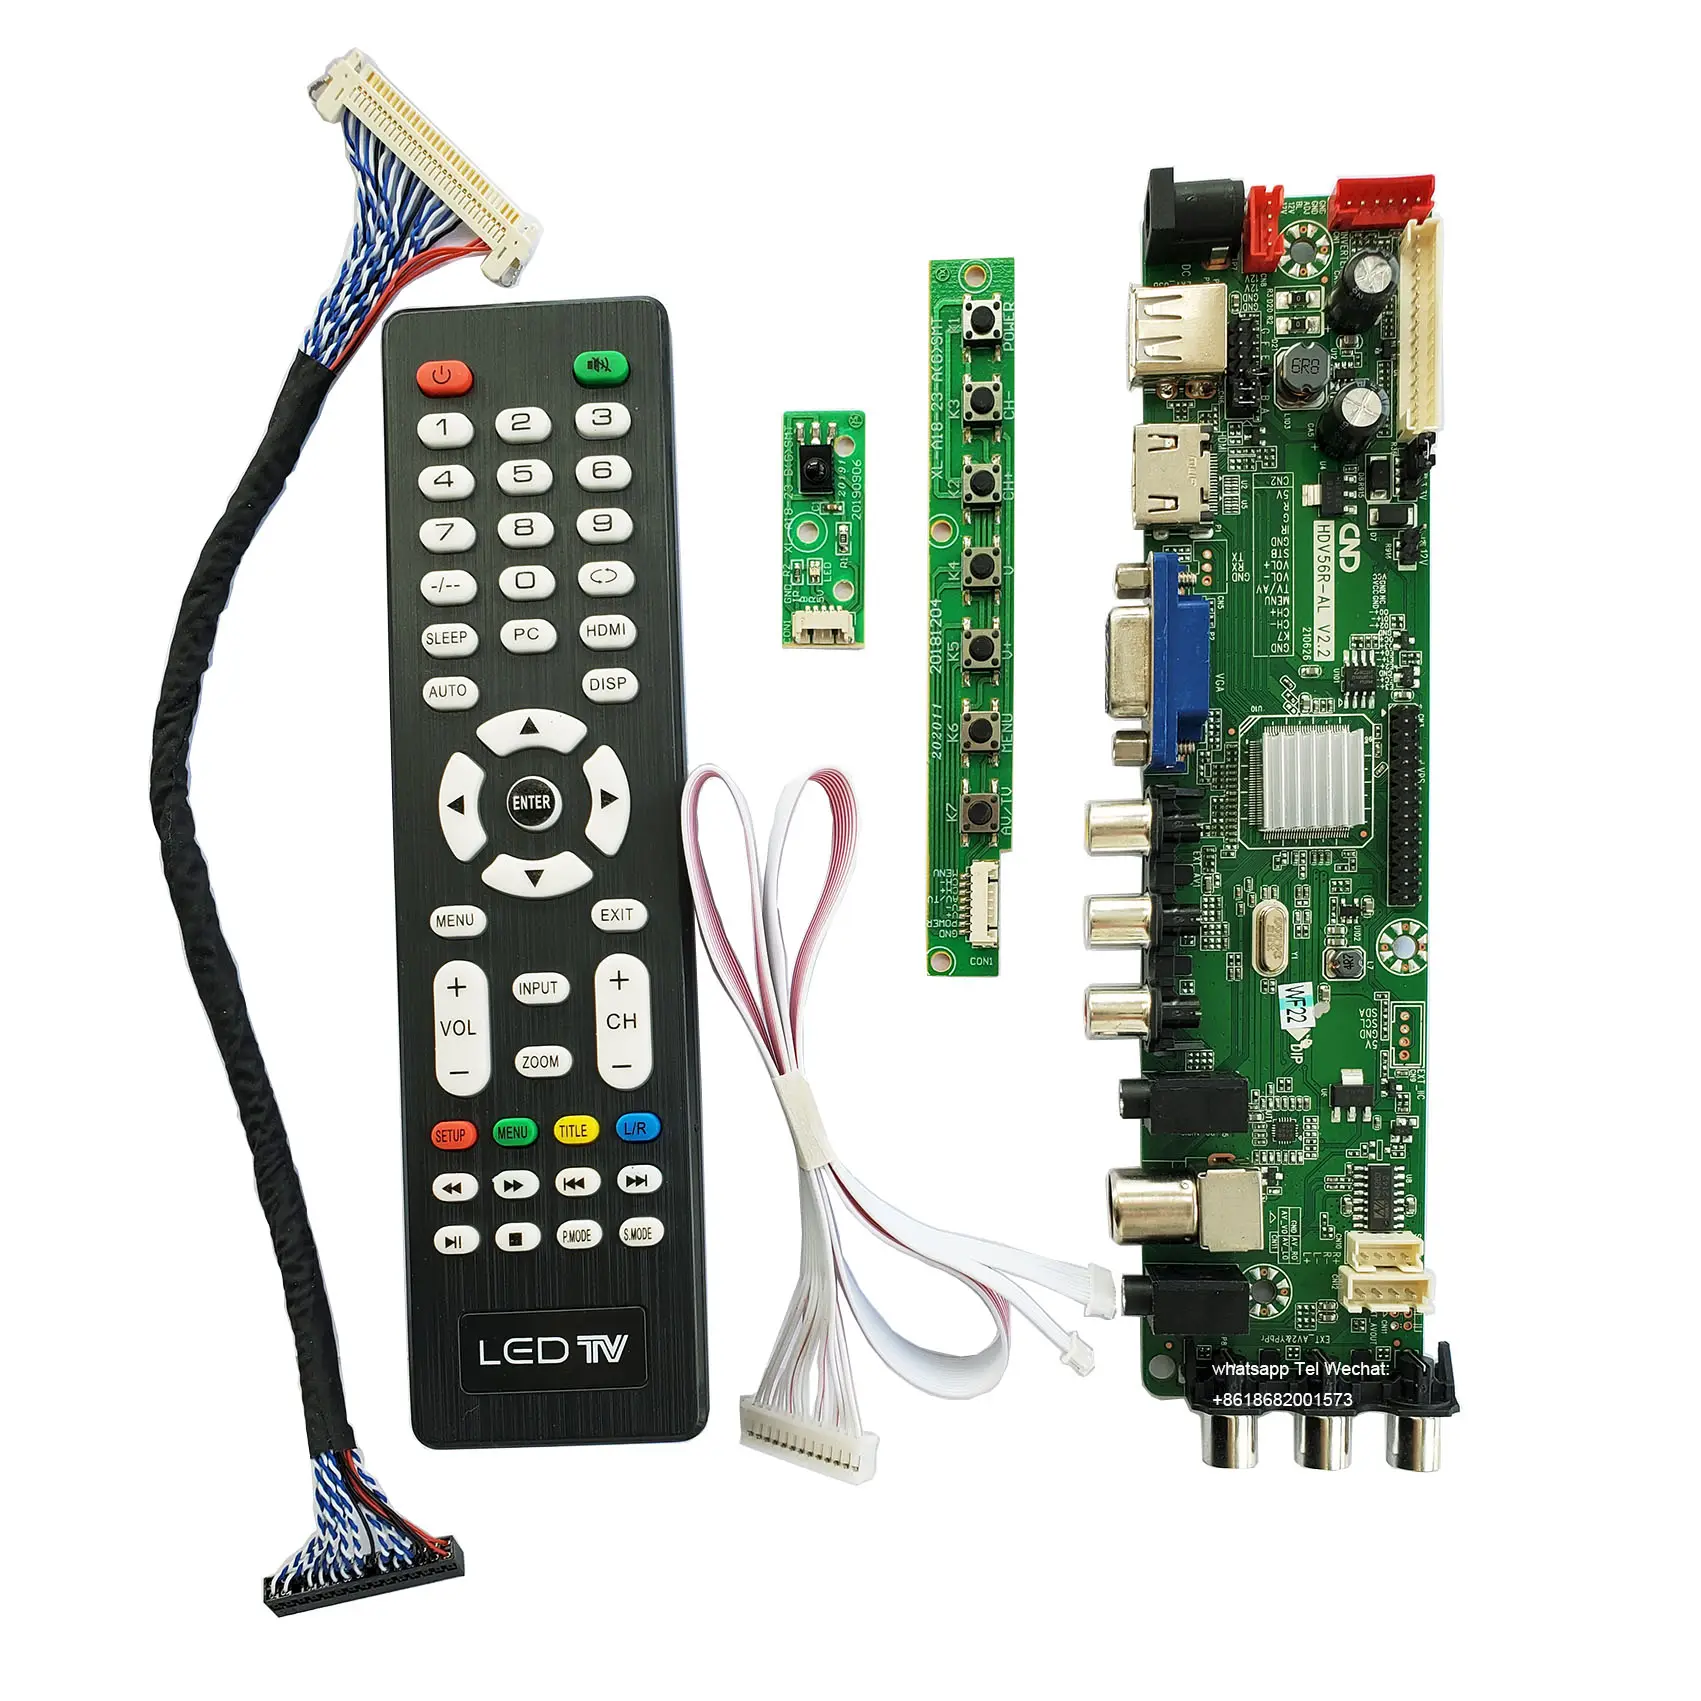 Placa base personalizada, placa base Universal TV, montaje de placa de TV, placa inteligente LED TV PCB